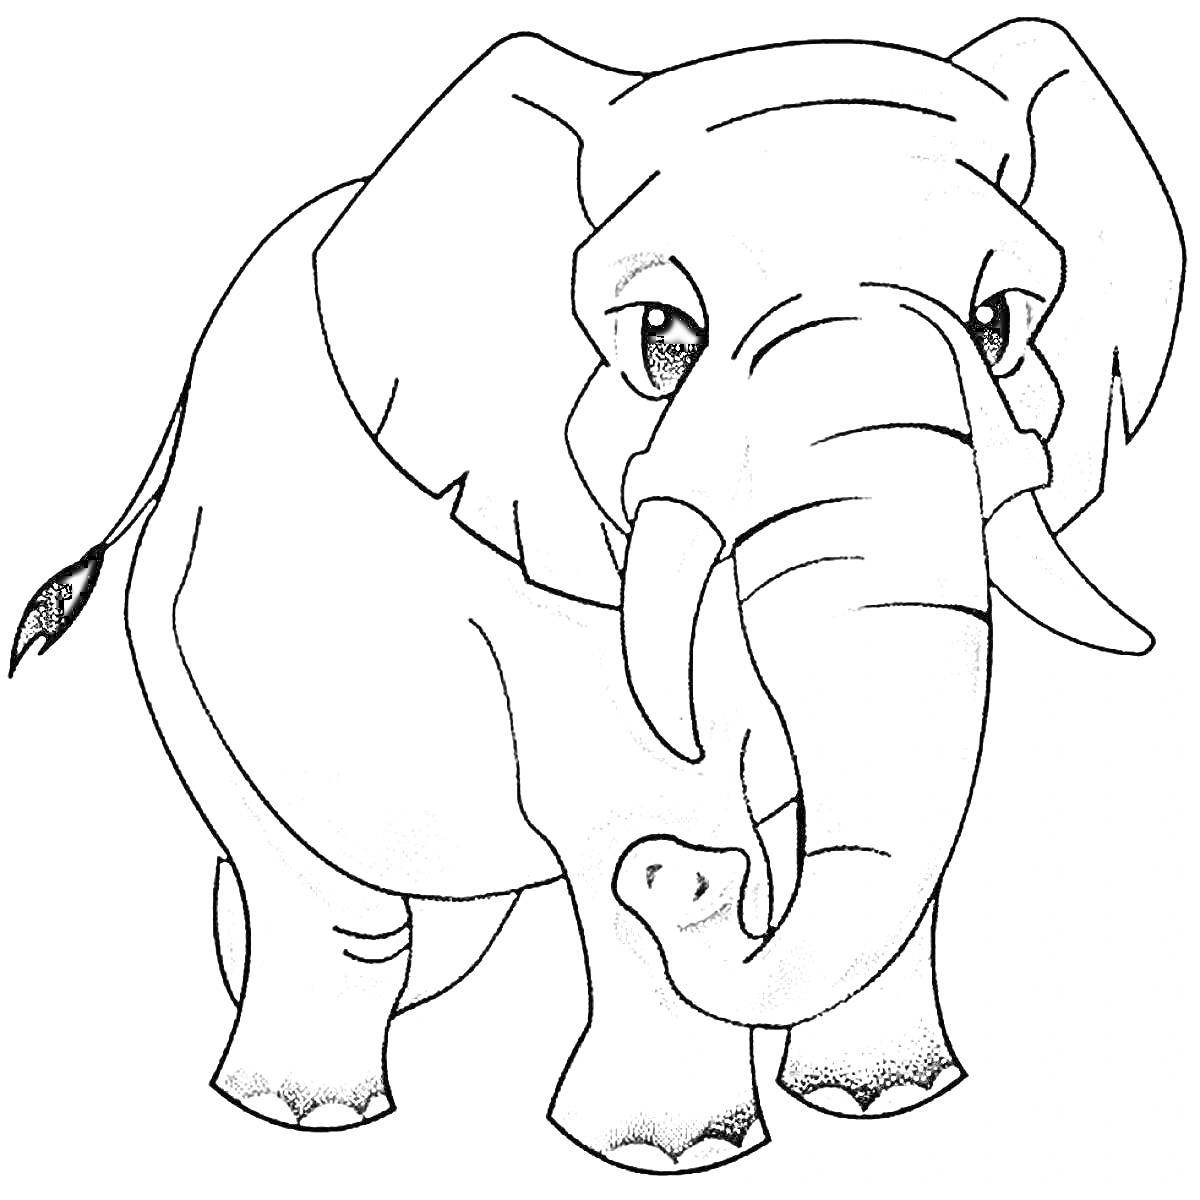 Раскраска Слон, повернутый к зрителю, с большими ушами и хоботом, черно-белая раскраска